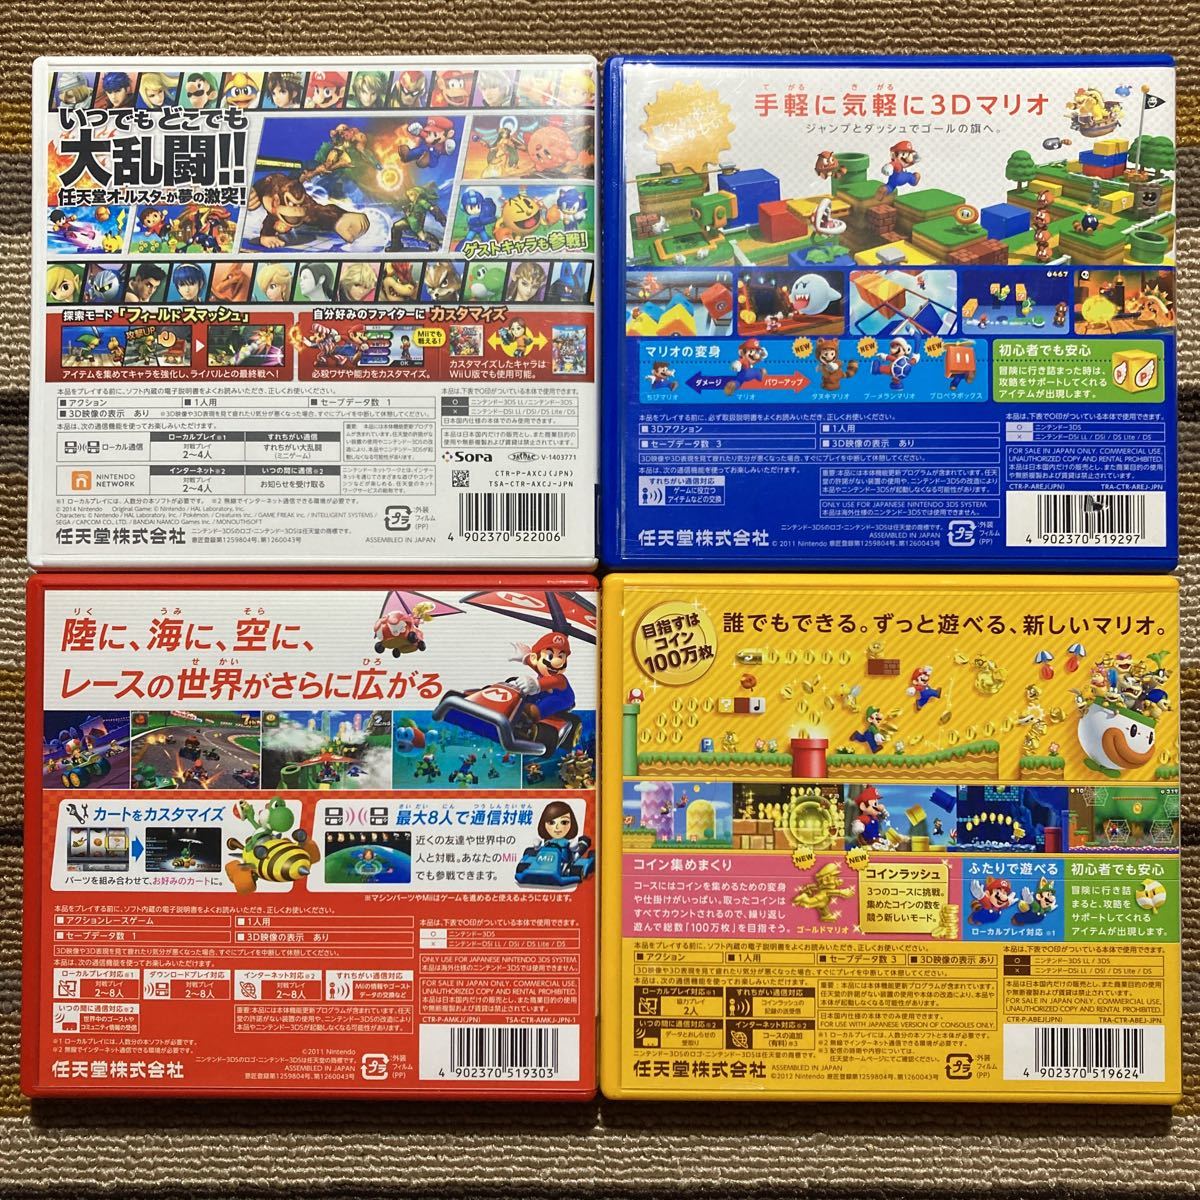 3DS 大乱闘スマッシュブラザーズ スーパーマリオ3Dランド スーパーマリオブラザーズ2 マリオカート7 